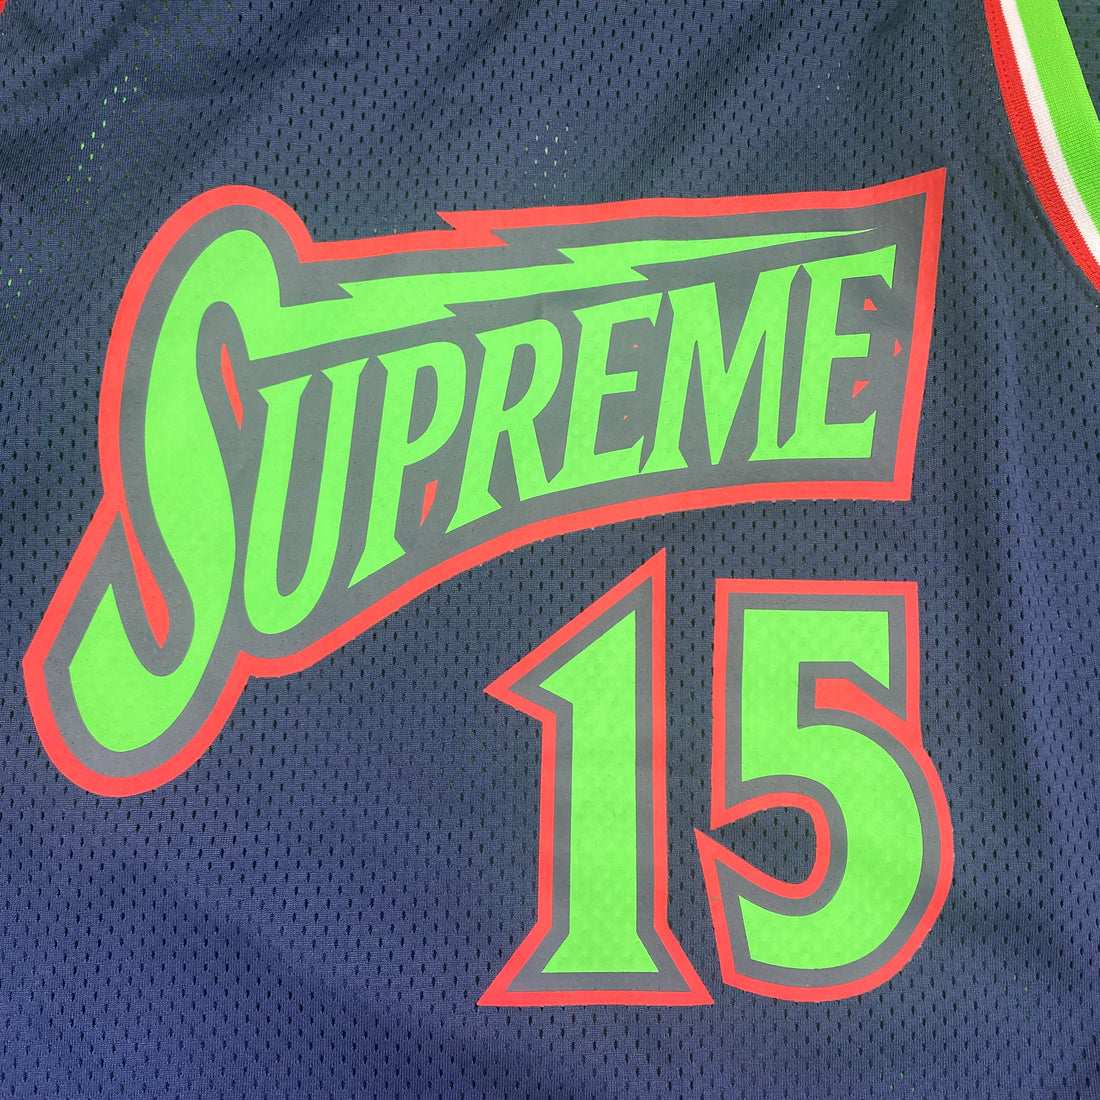 supreme bolt basketball jersey 白 XL